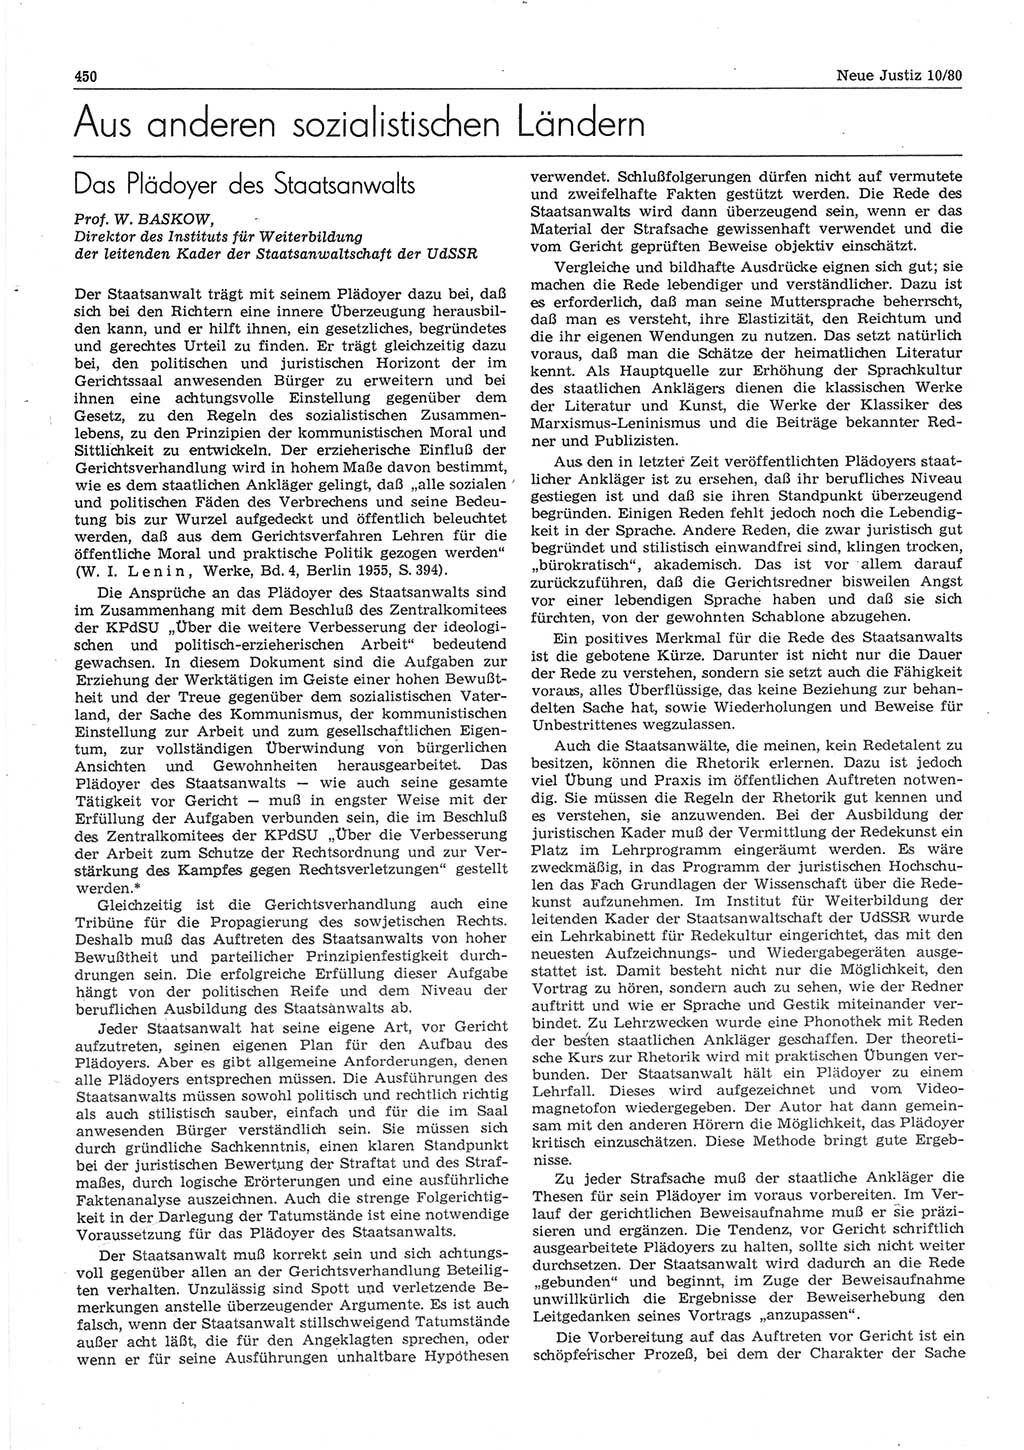 Neue Justiz (NJ), Zeitschrift für sozialistisches Recht und Gesetzlichkeit [Deutsche Demokratische Republik (DDR)], 34. Jahrgang 1980, Seite 450 (NJ DDR 1980, S. 450)